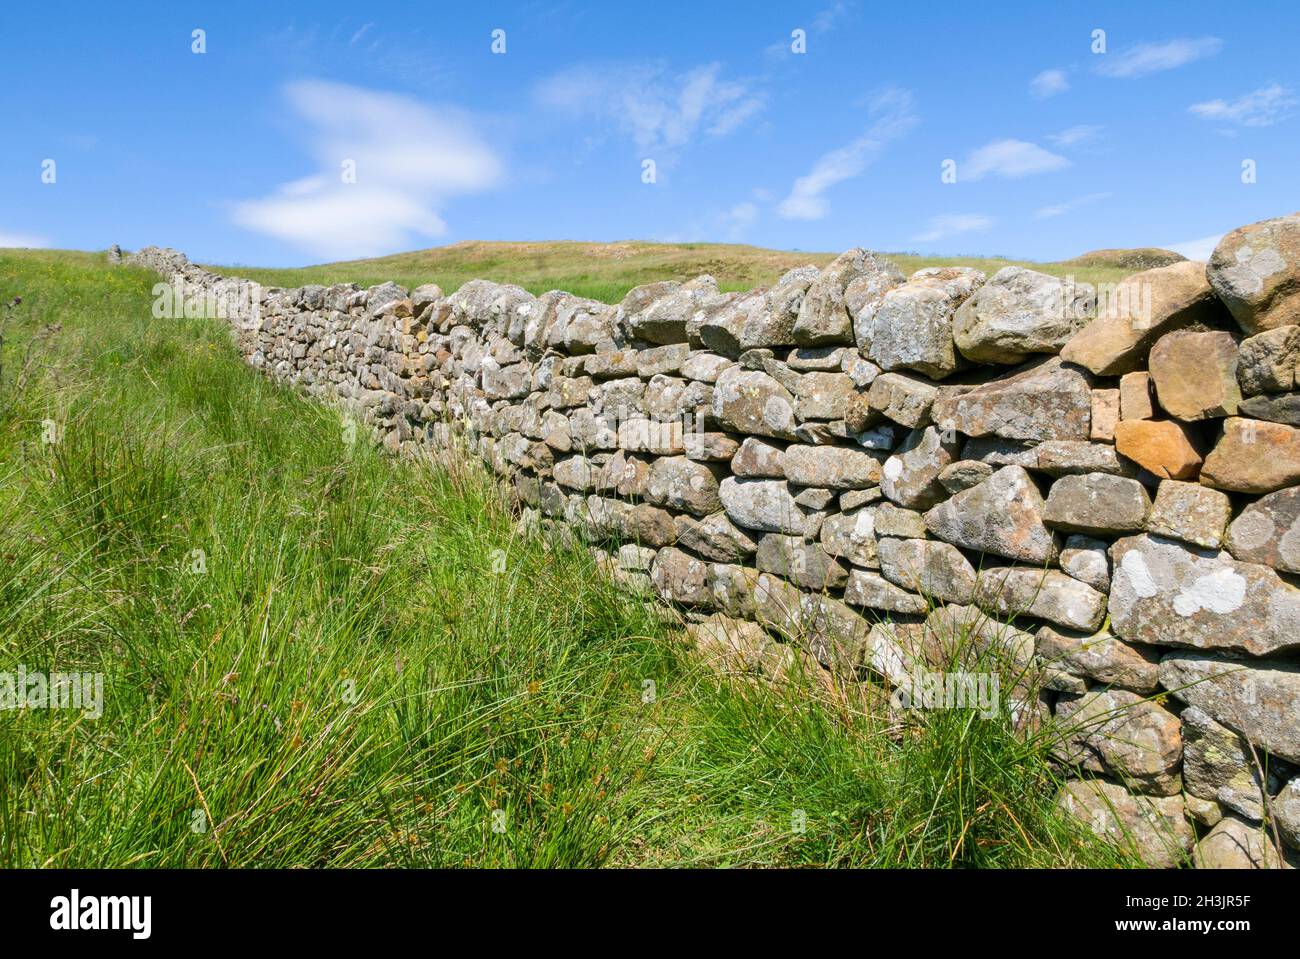 Mur de pierre sèche ou un mur de pierre sèche à travers un champ vert Angleterre GB Royaume-Uni Europe Banque D'Images